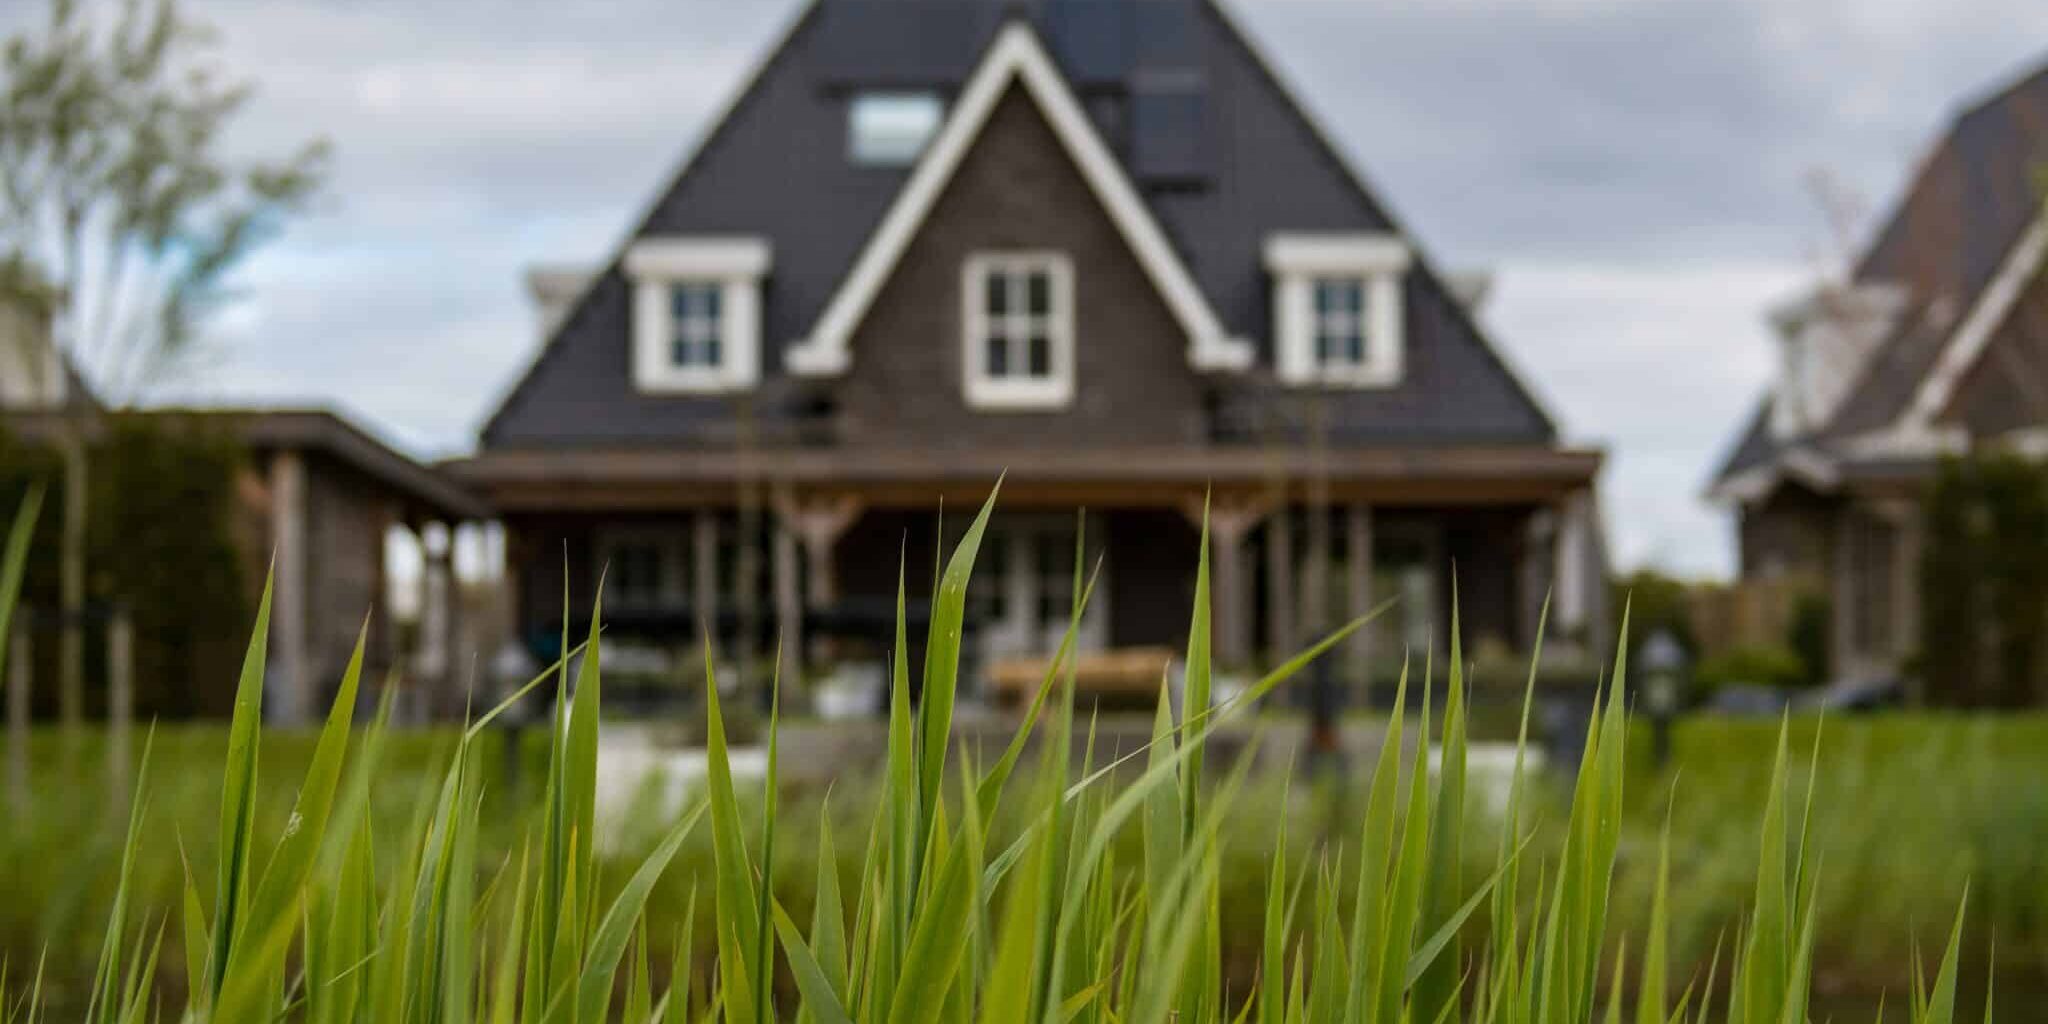 Das Bild zeigt ein Haus im Hintergrund. Es ist durch hohes Gras hindurch fotografiert aus einer Froschperspektive und damit teilweise verdeckt von dem Gras.